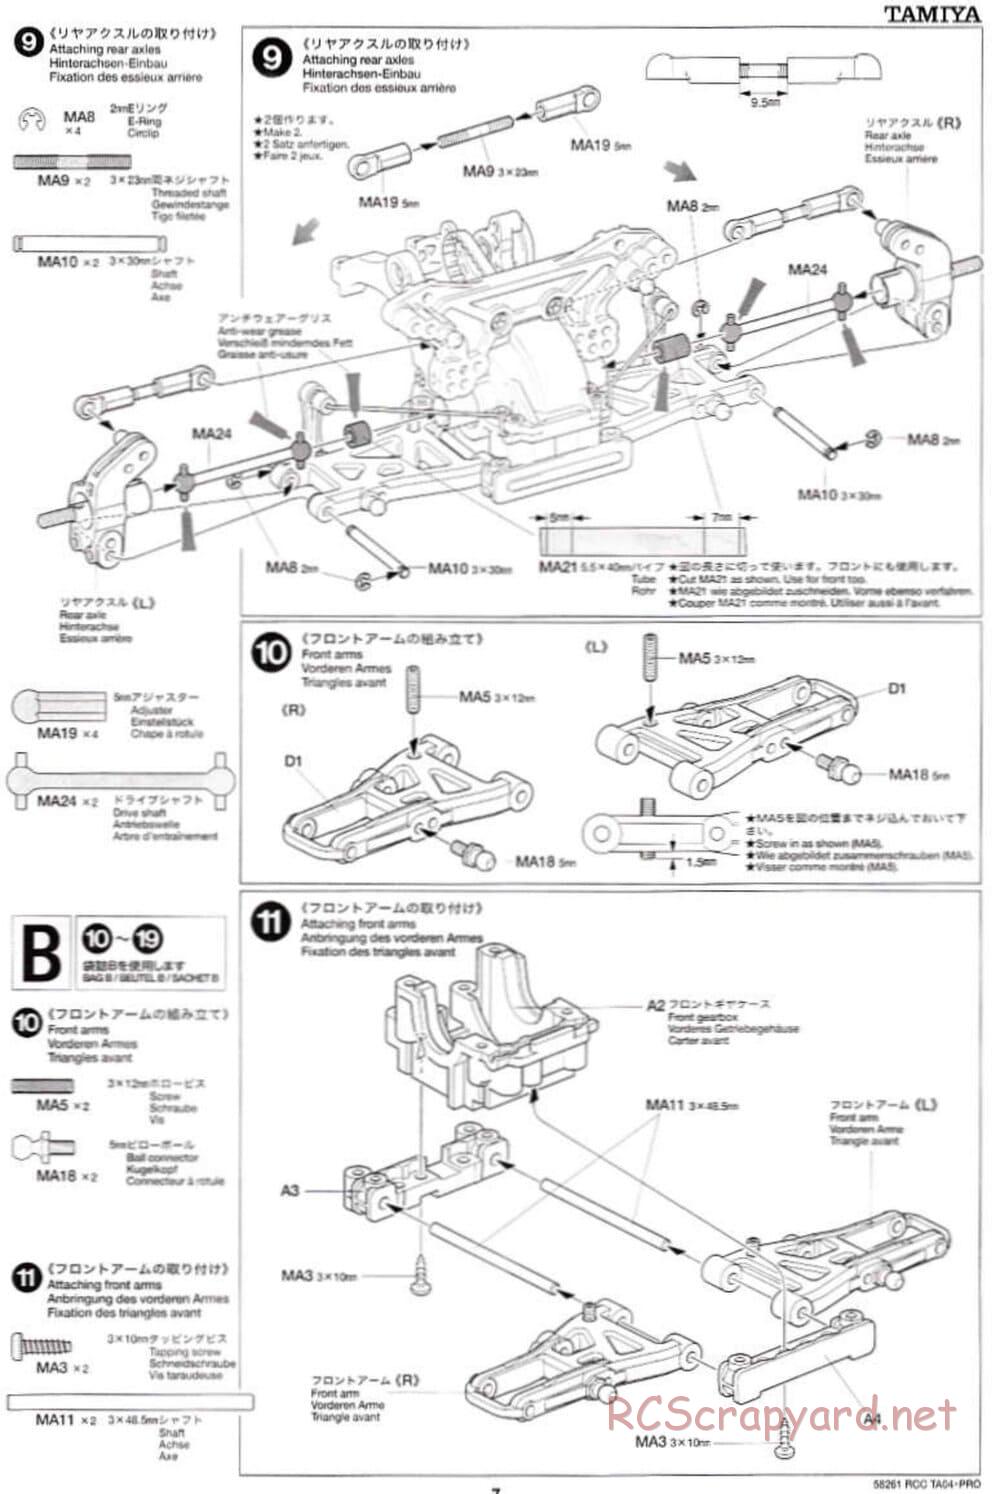 Tamiya - TA-04 Pro Chassis - Manual - Page 7